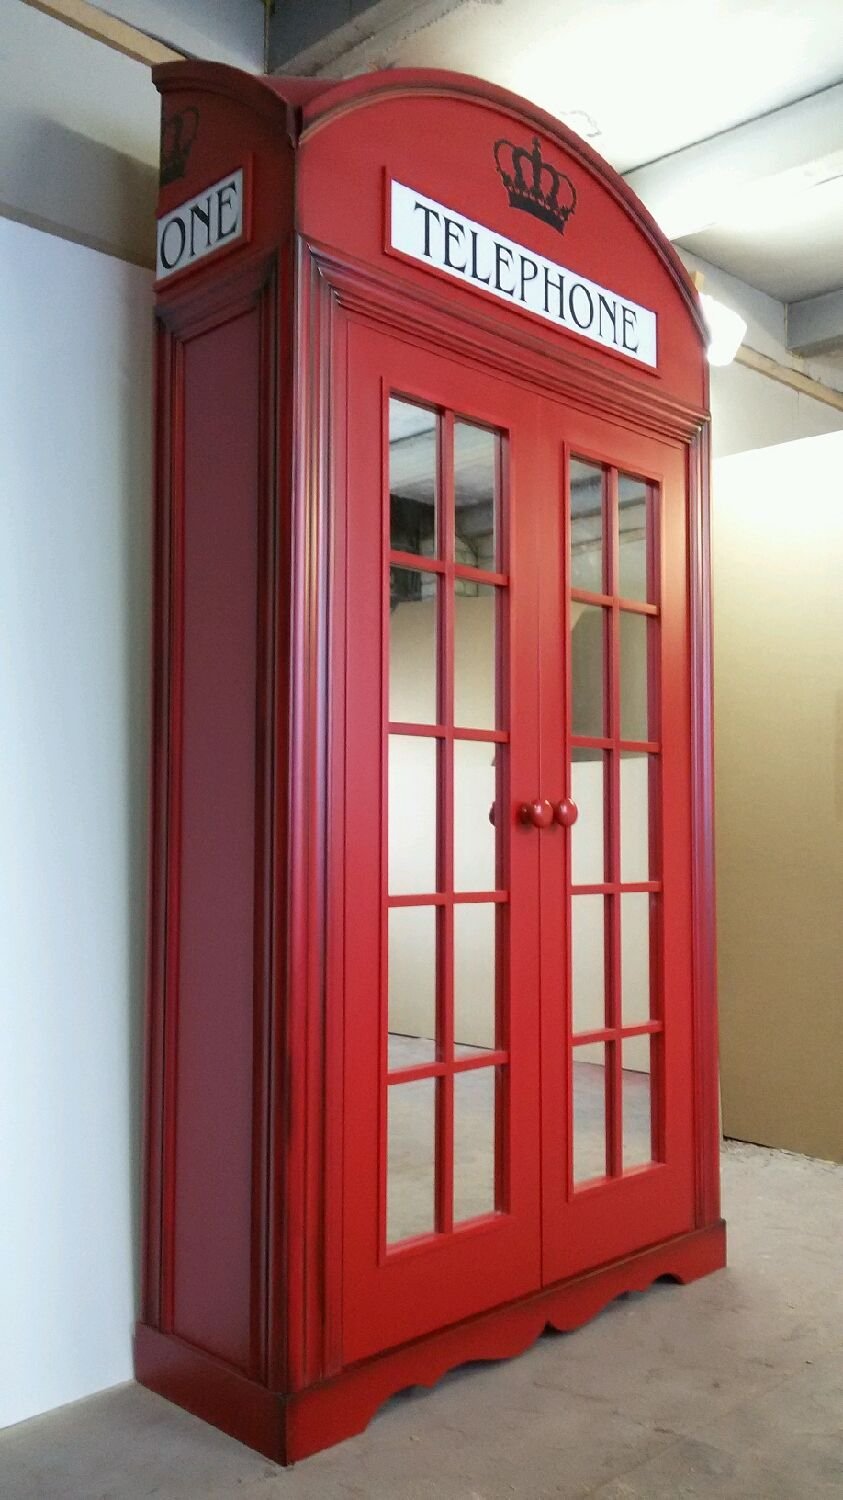 Шкаф-витрина London telephone, 49х49х139